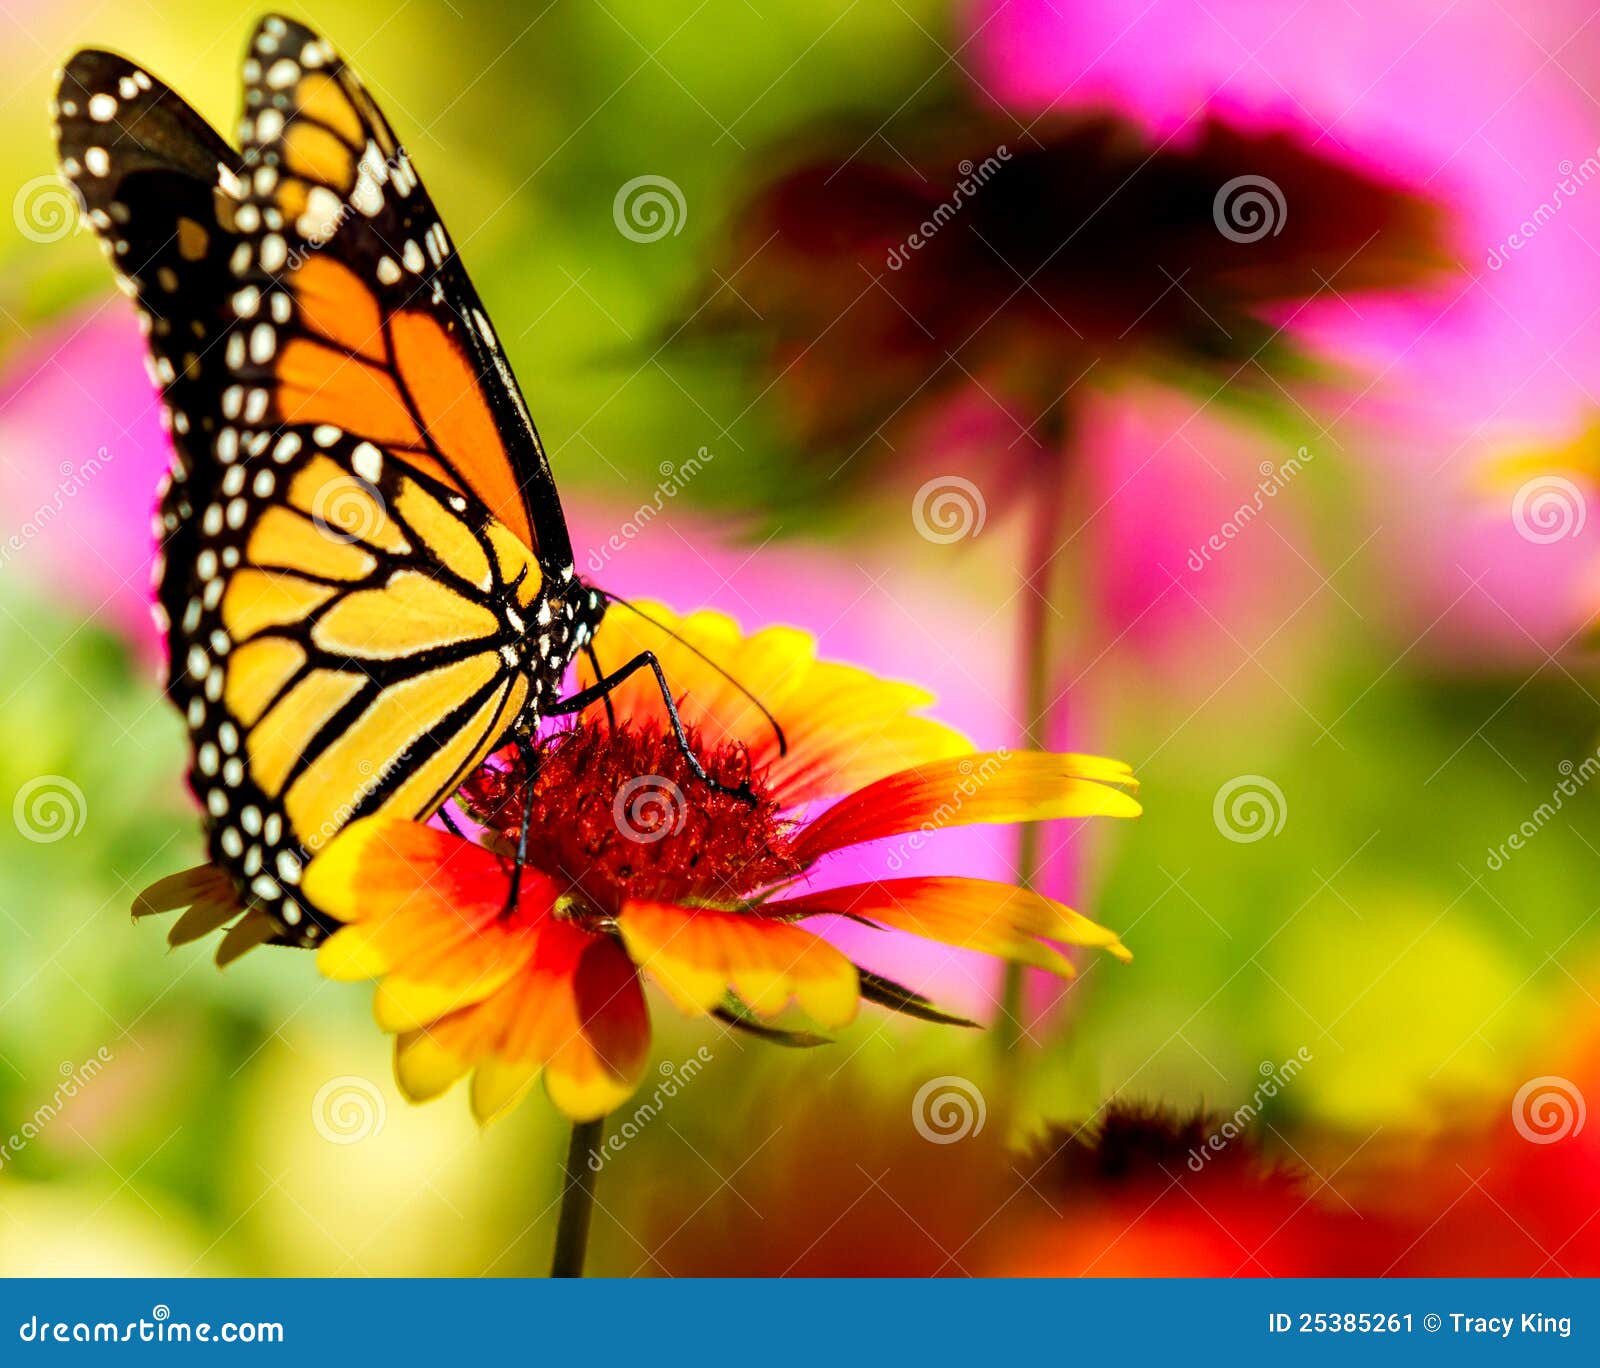 monarch butterfly pretty flower 25385261